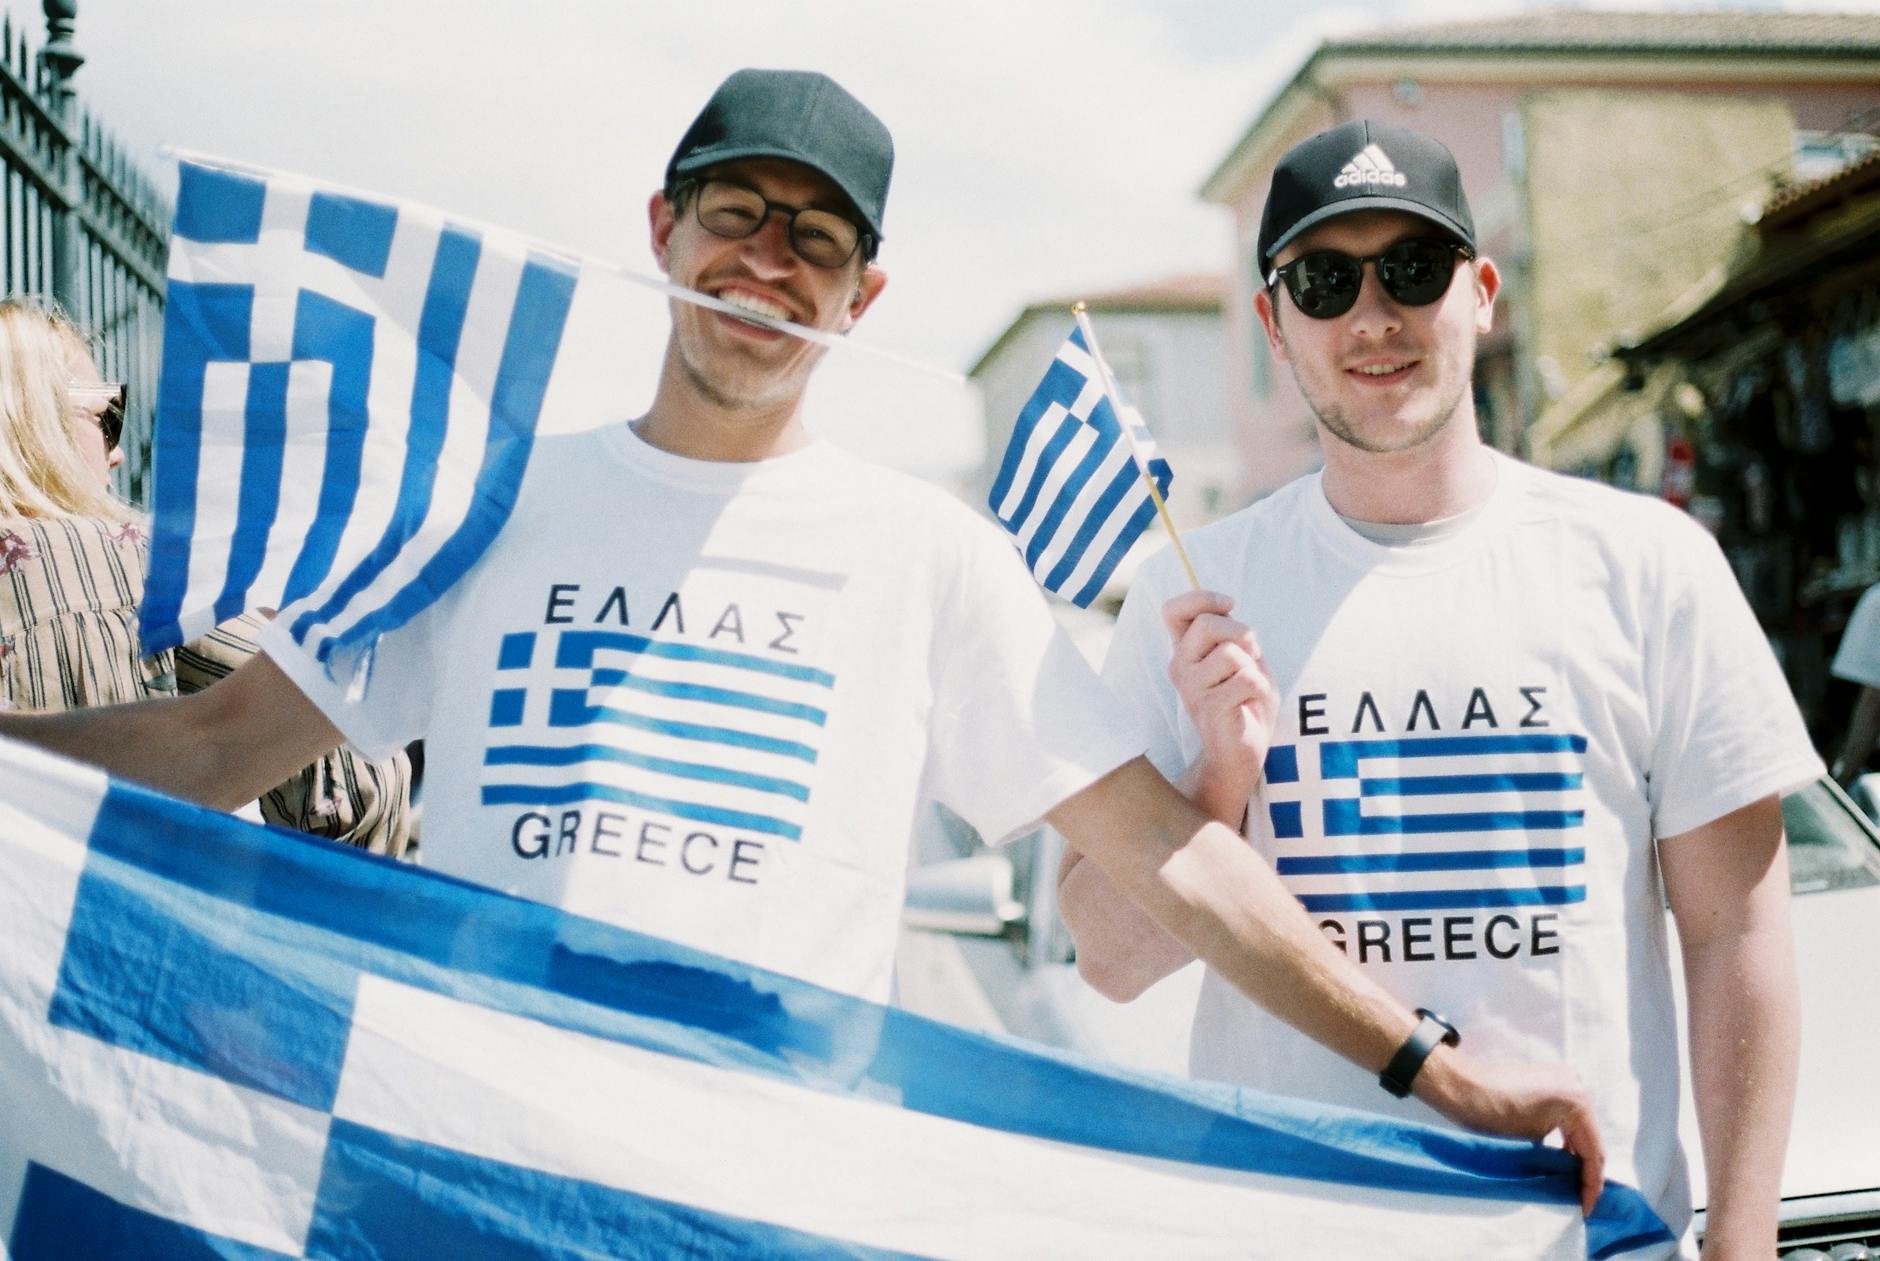 hombre vestido con camisetas y sosteniendo banderas de grecia